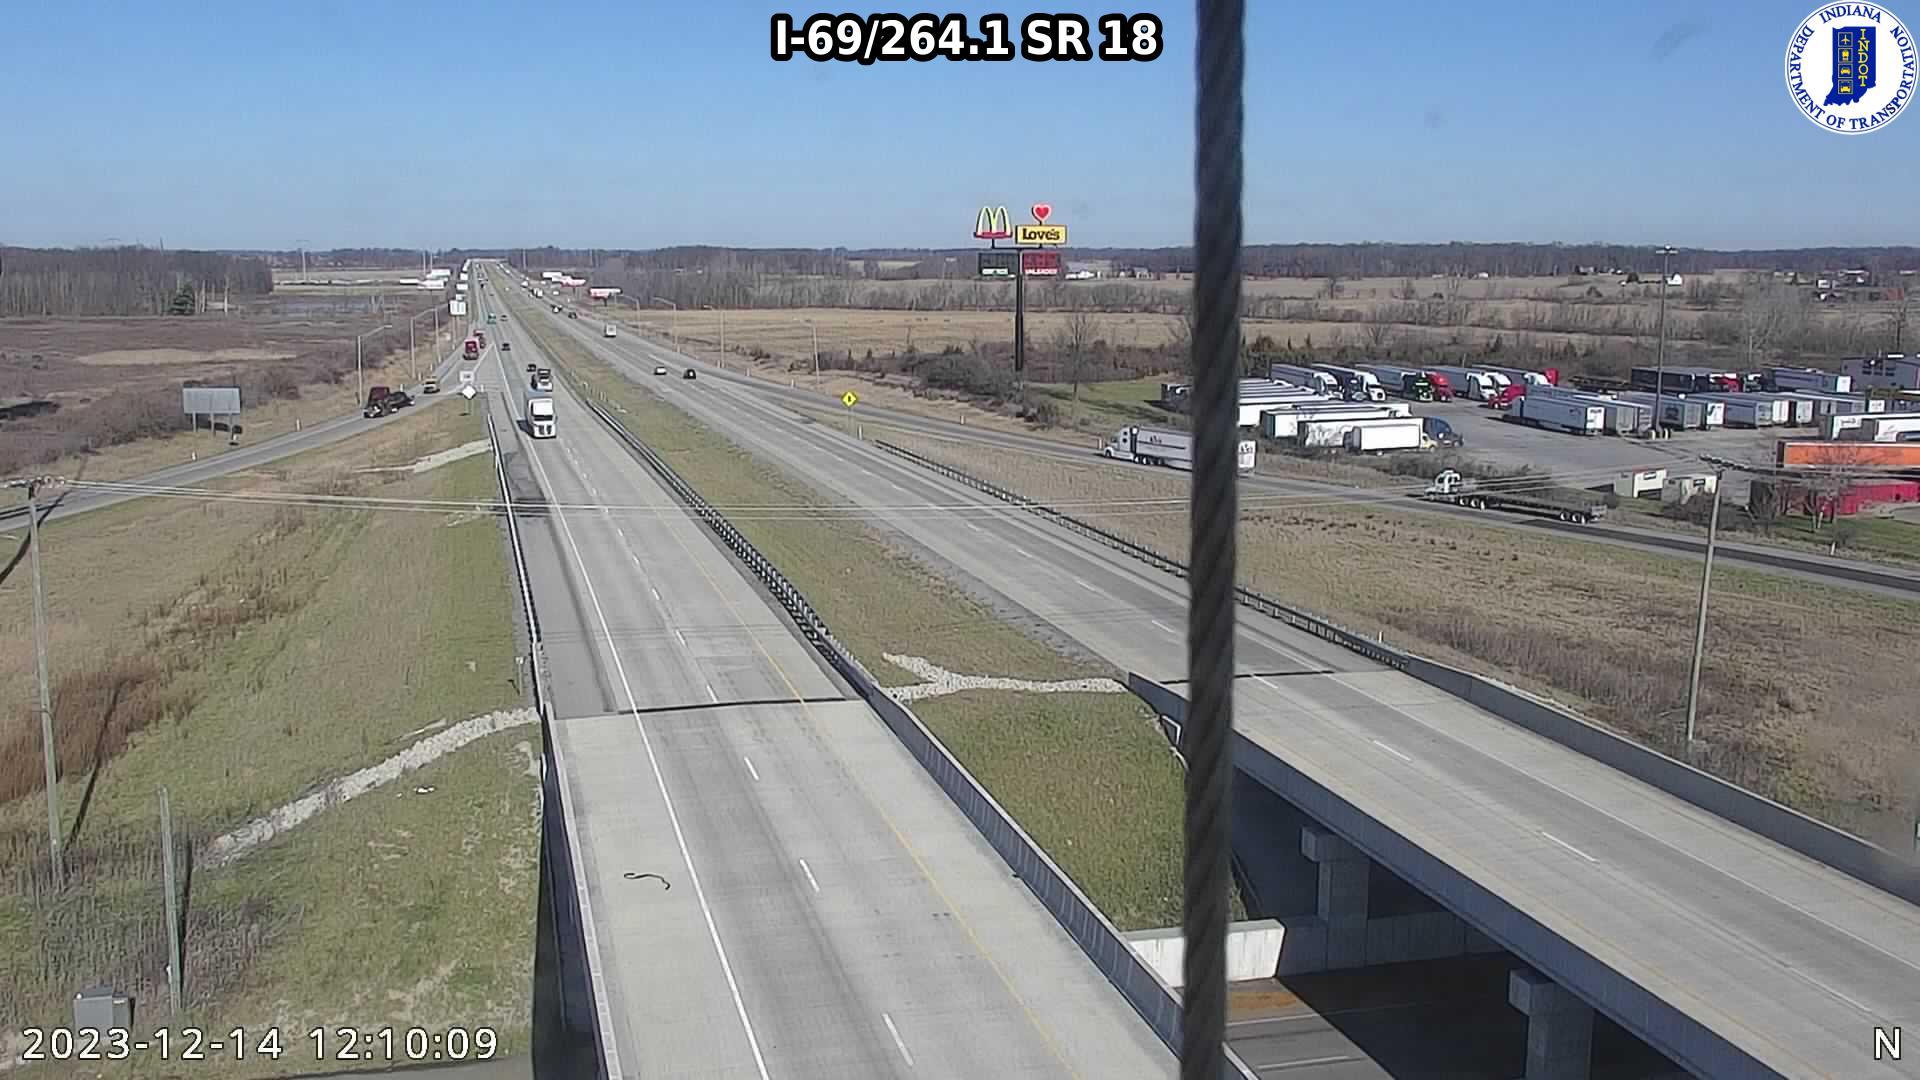 Marion: I-69: I-69/264.1 SR Traffic Camera